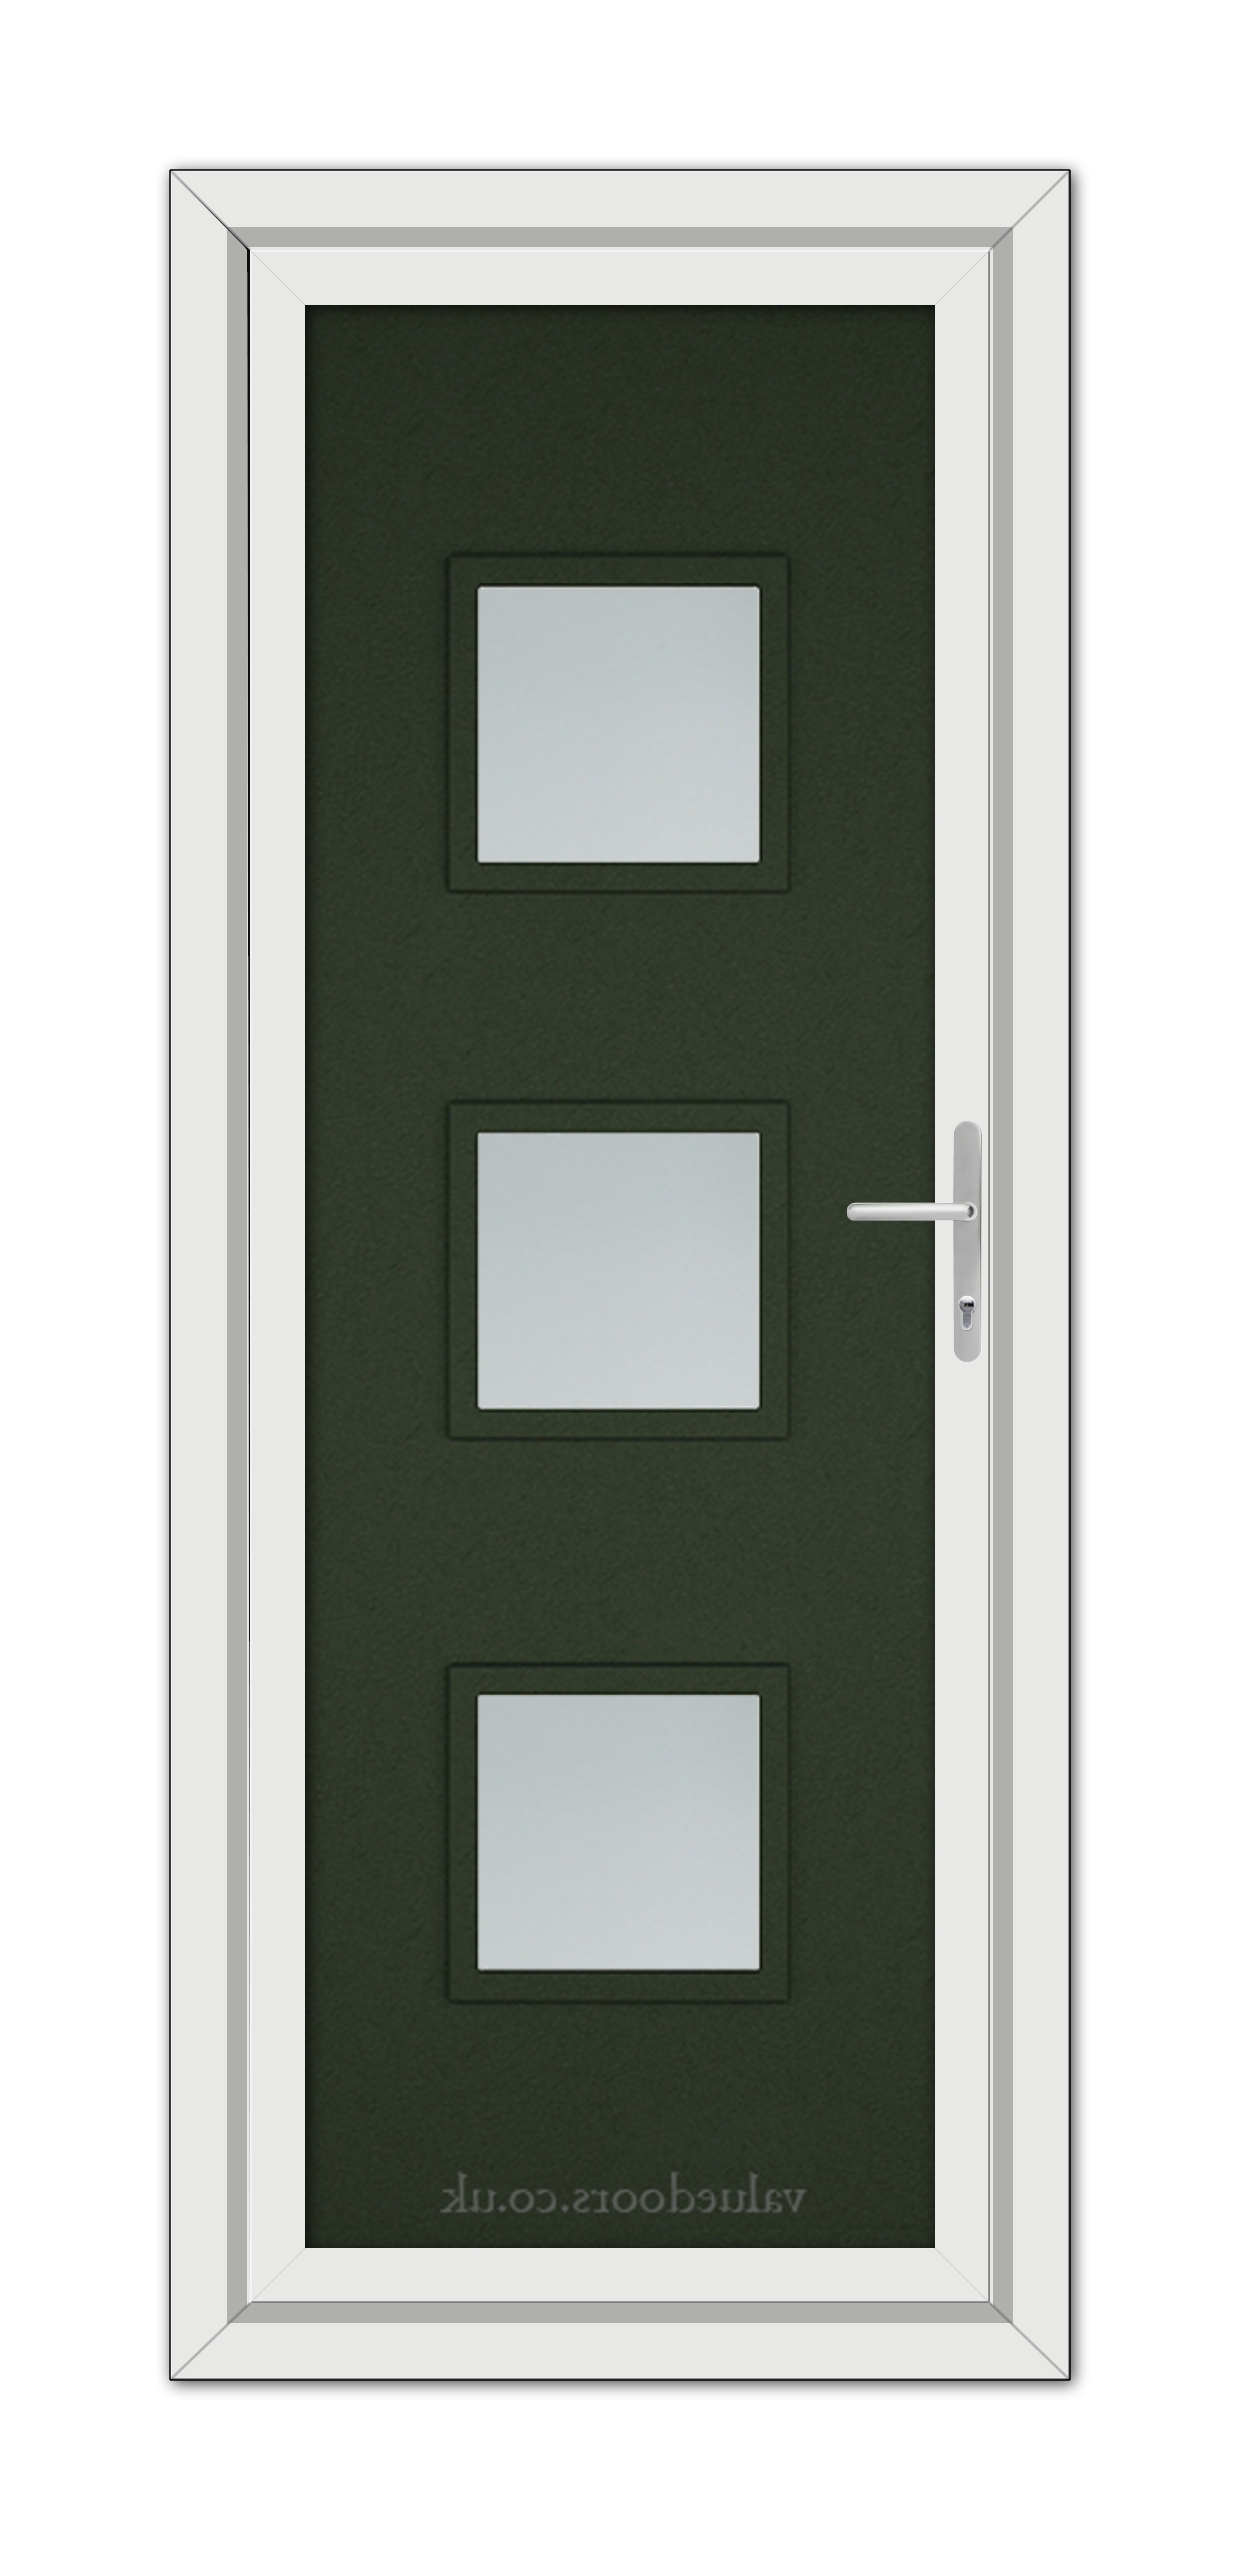 A close-up of a Green Modern 5013 uPVC Door.